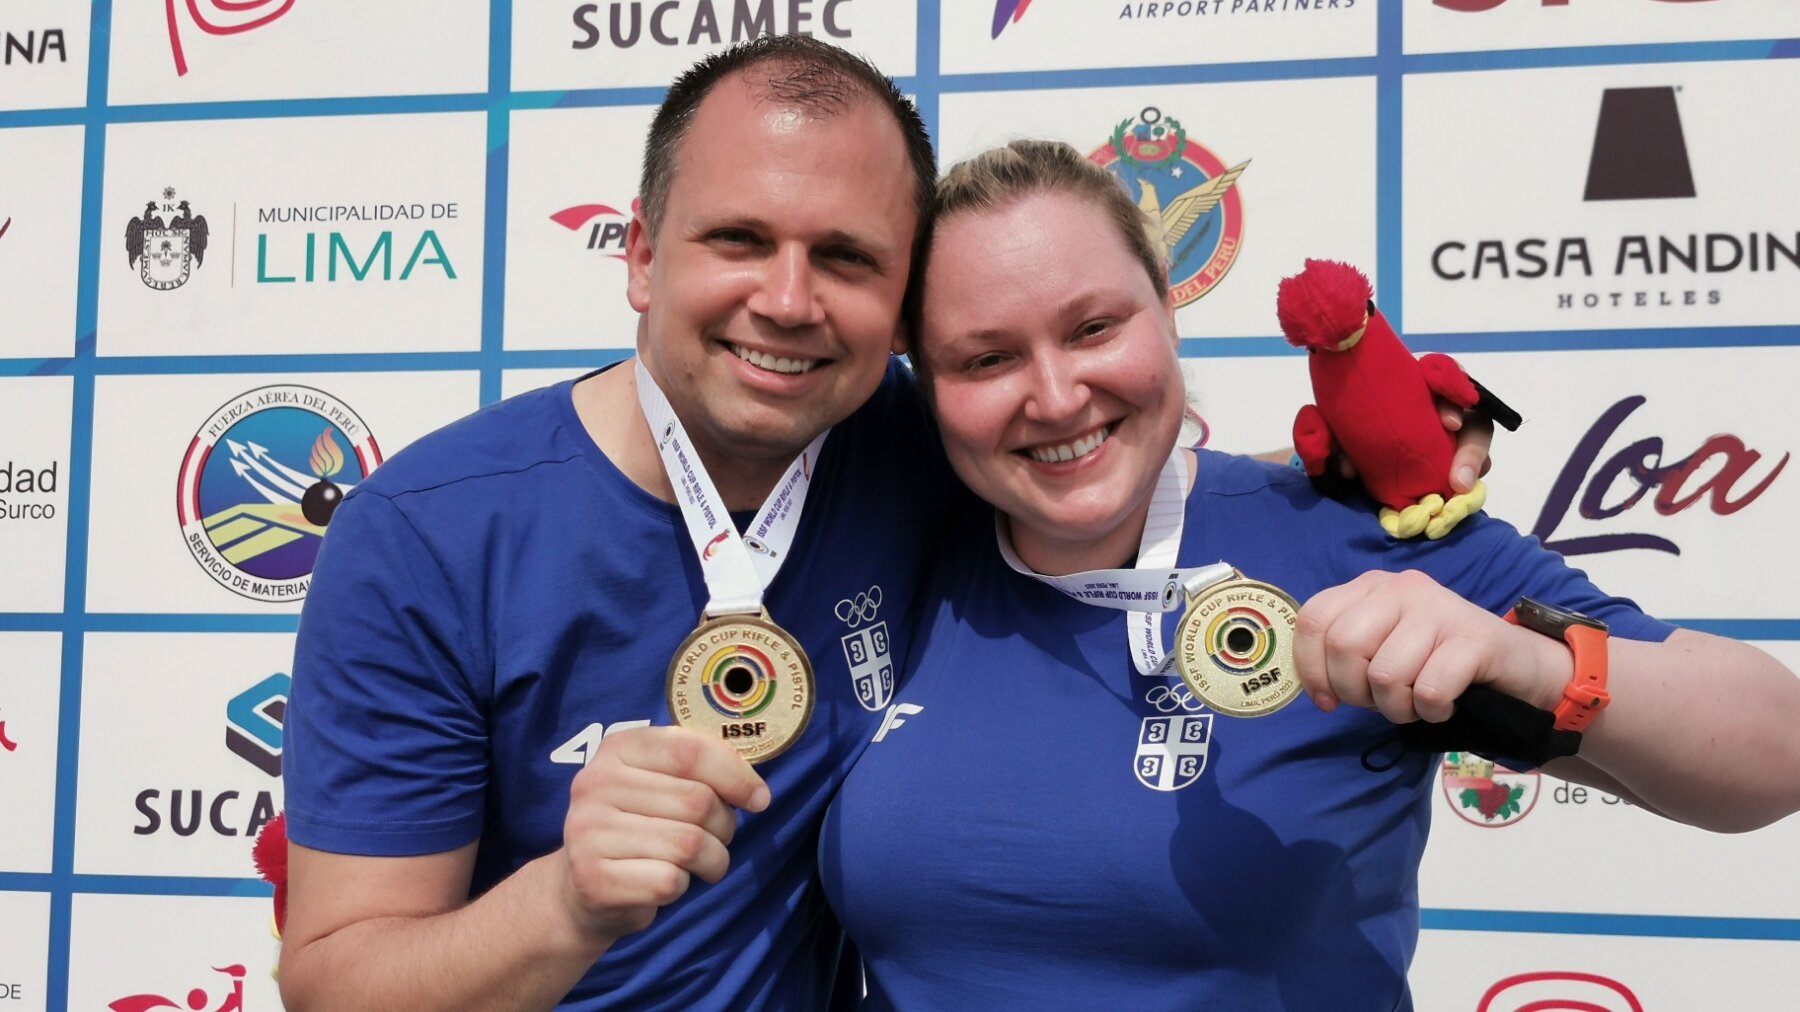 Dve zlatne medalje za Srbiju na Svetskom kupu u streljaštvu u Limi!